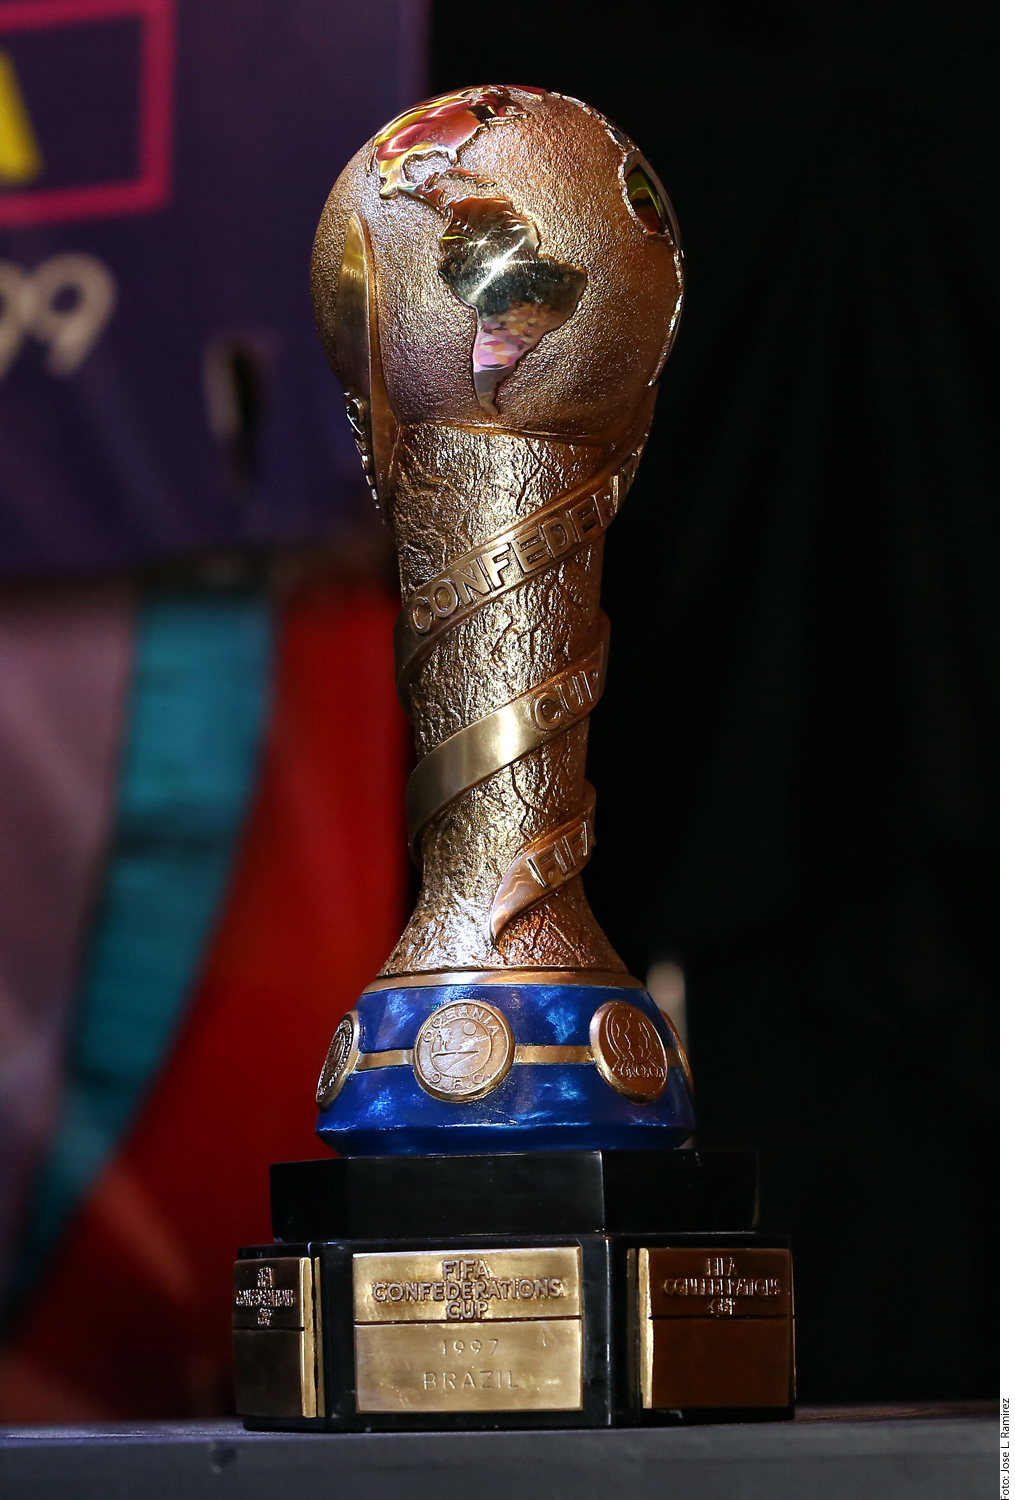 También se exhibirán los trofeos conquistados por México, como el de la Copa FIFA Confederaciones